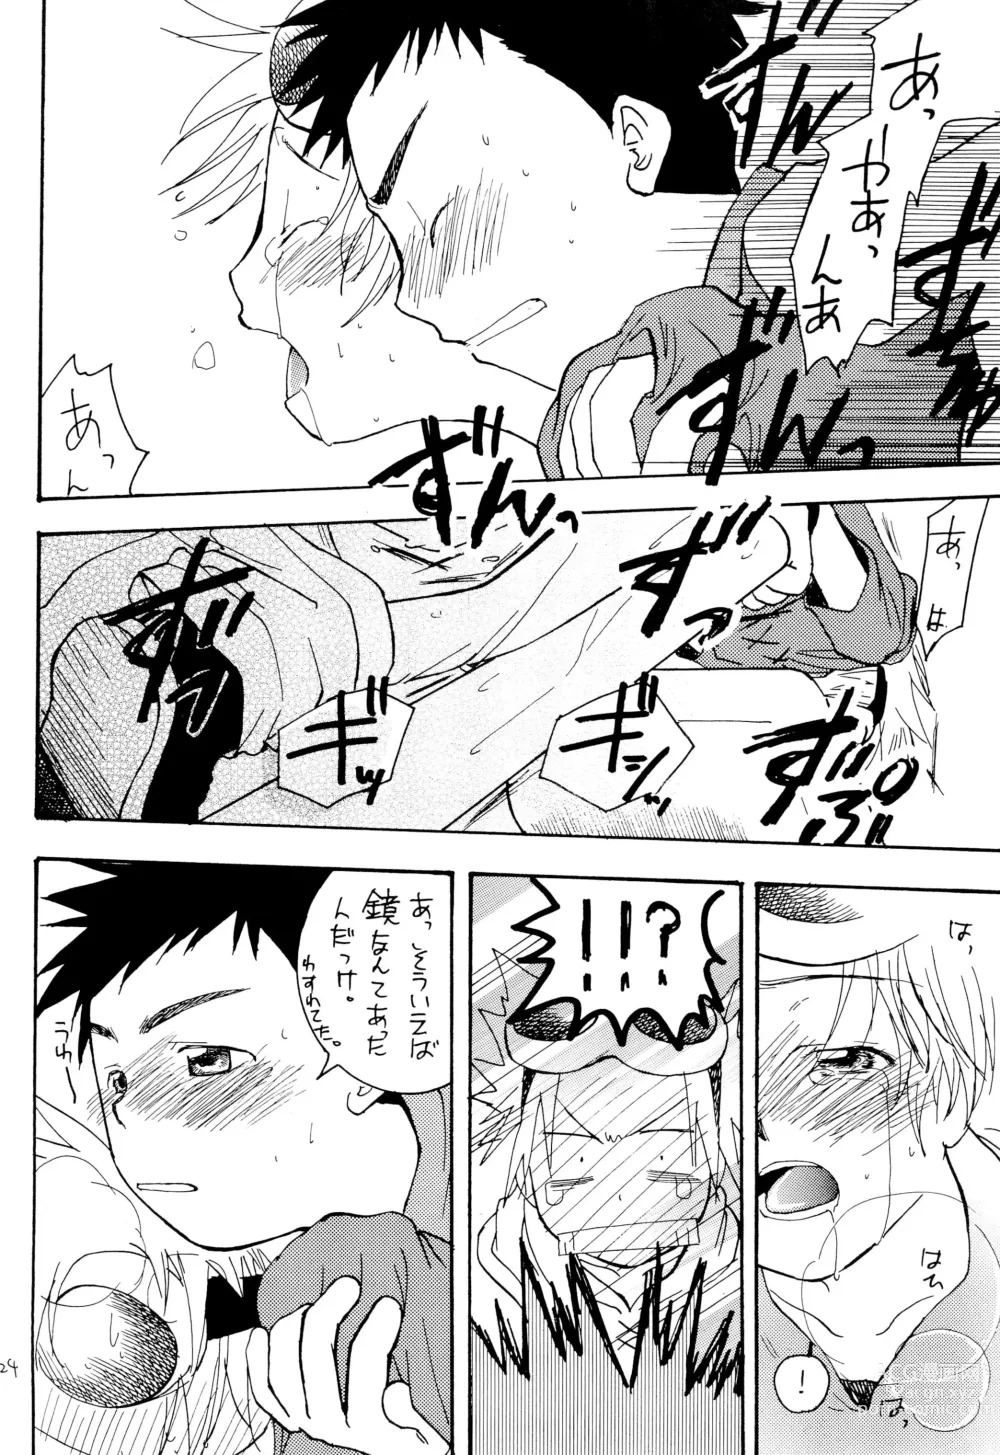 Page 26 of doujinshi LiTaka 2